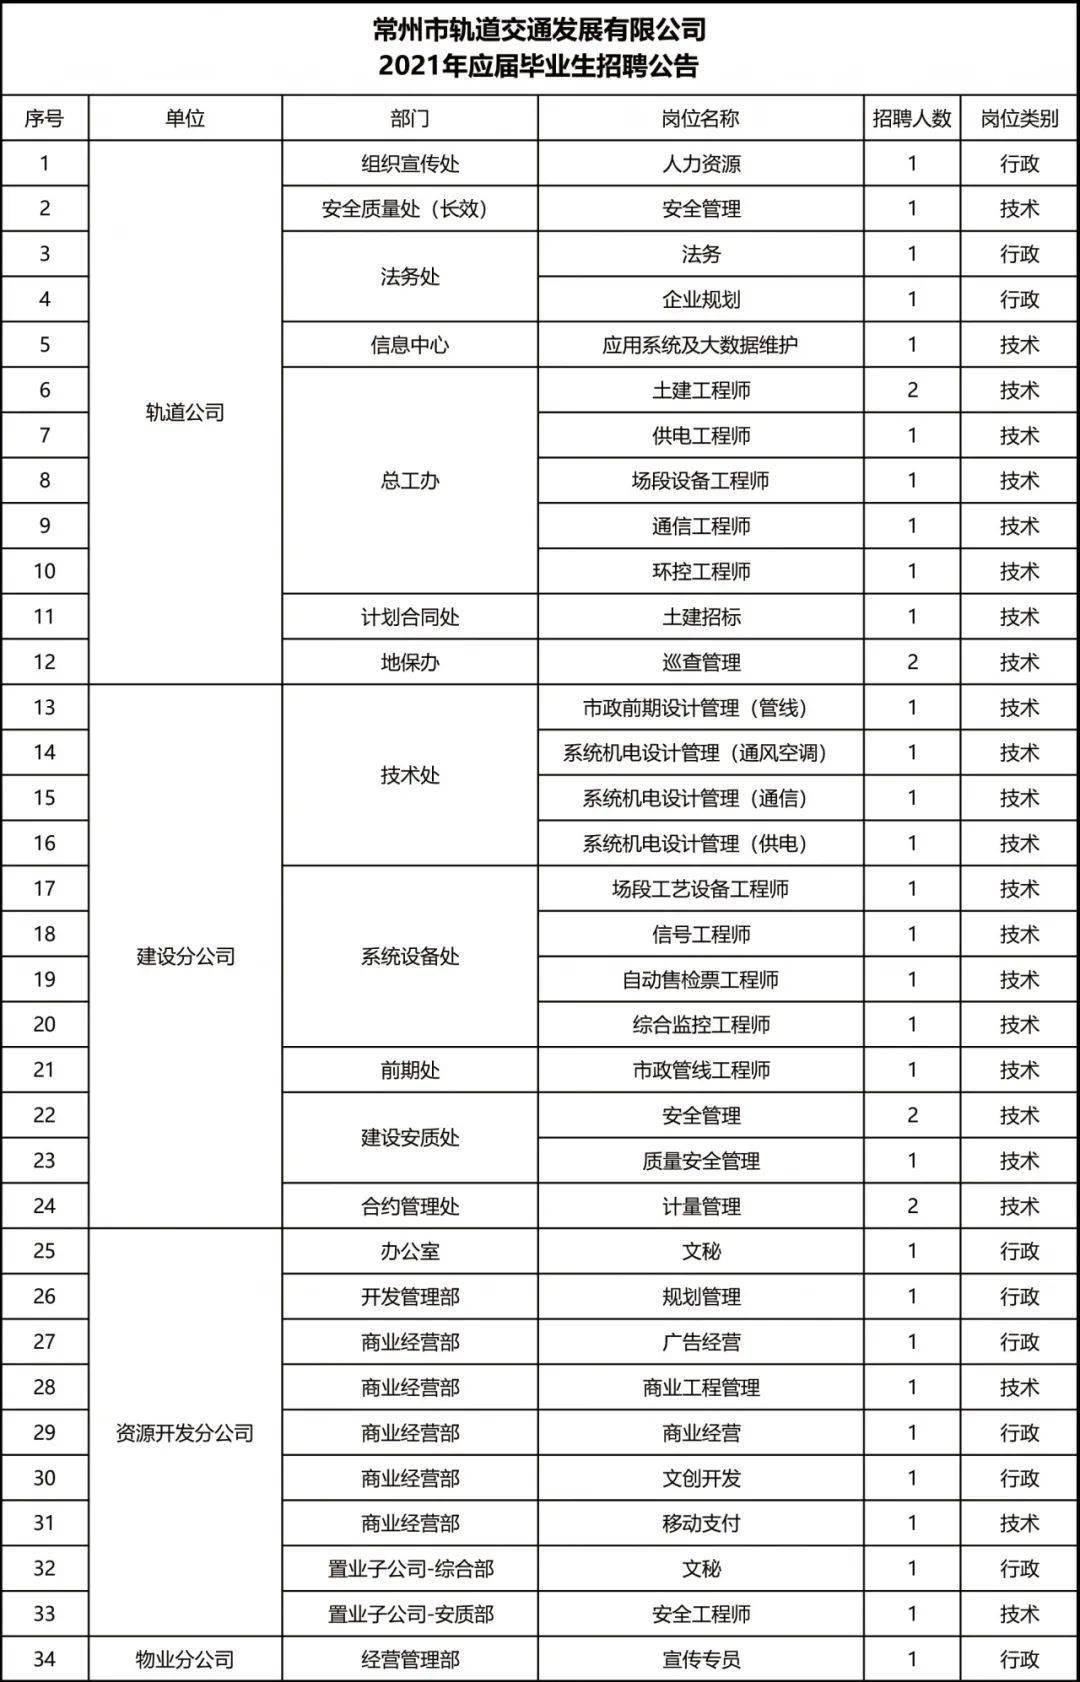 常州地铁招聘_常州地铁招聘 2017.10.11(2)